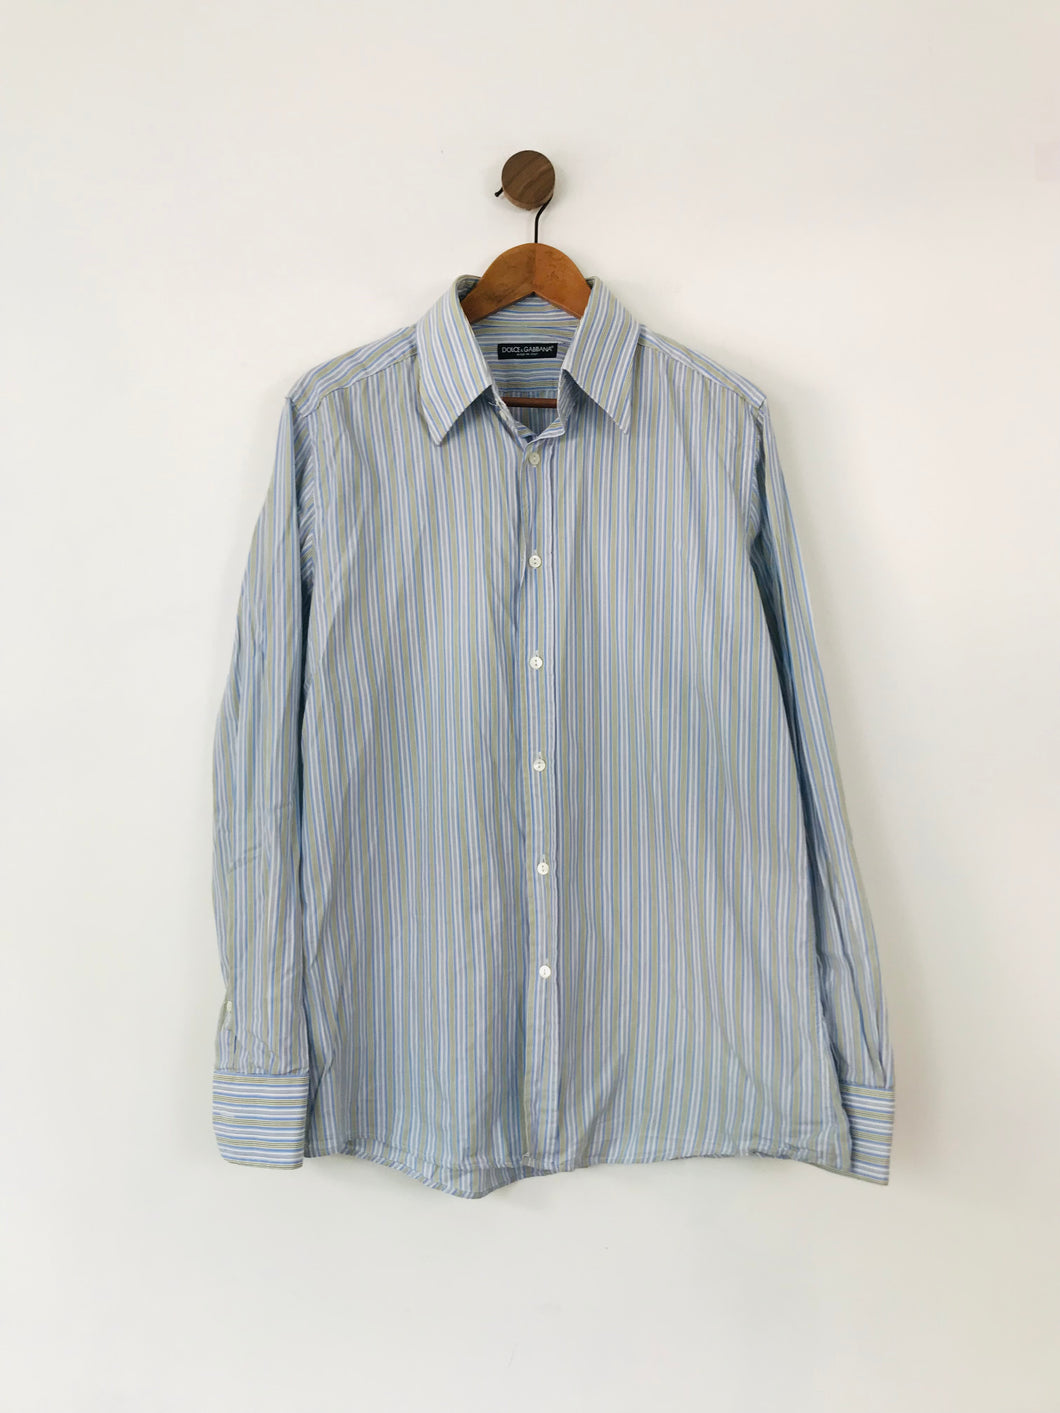 Dolce & Gabbana Men's Striped Button-Up Shirt | 17 43 | Blue